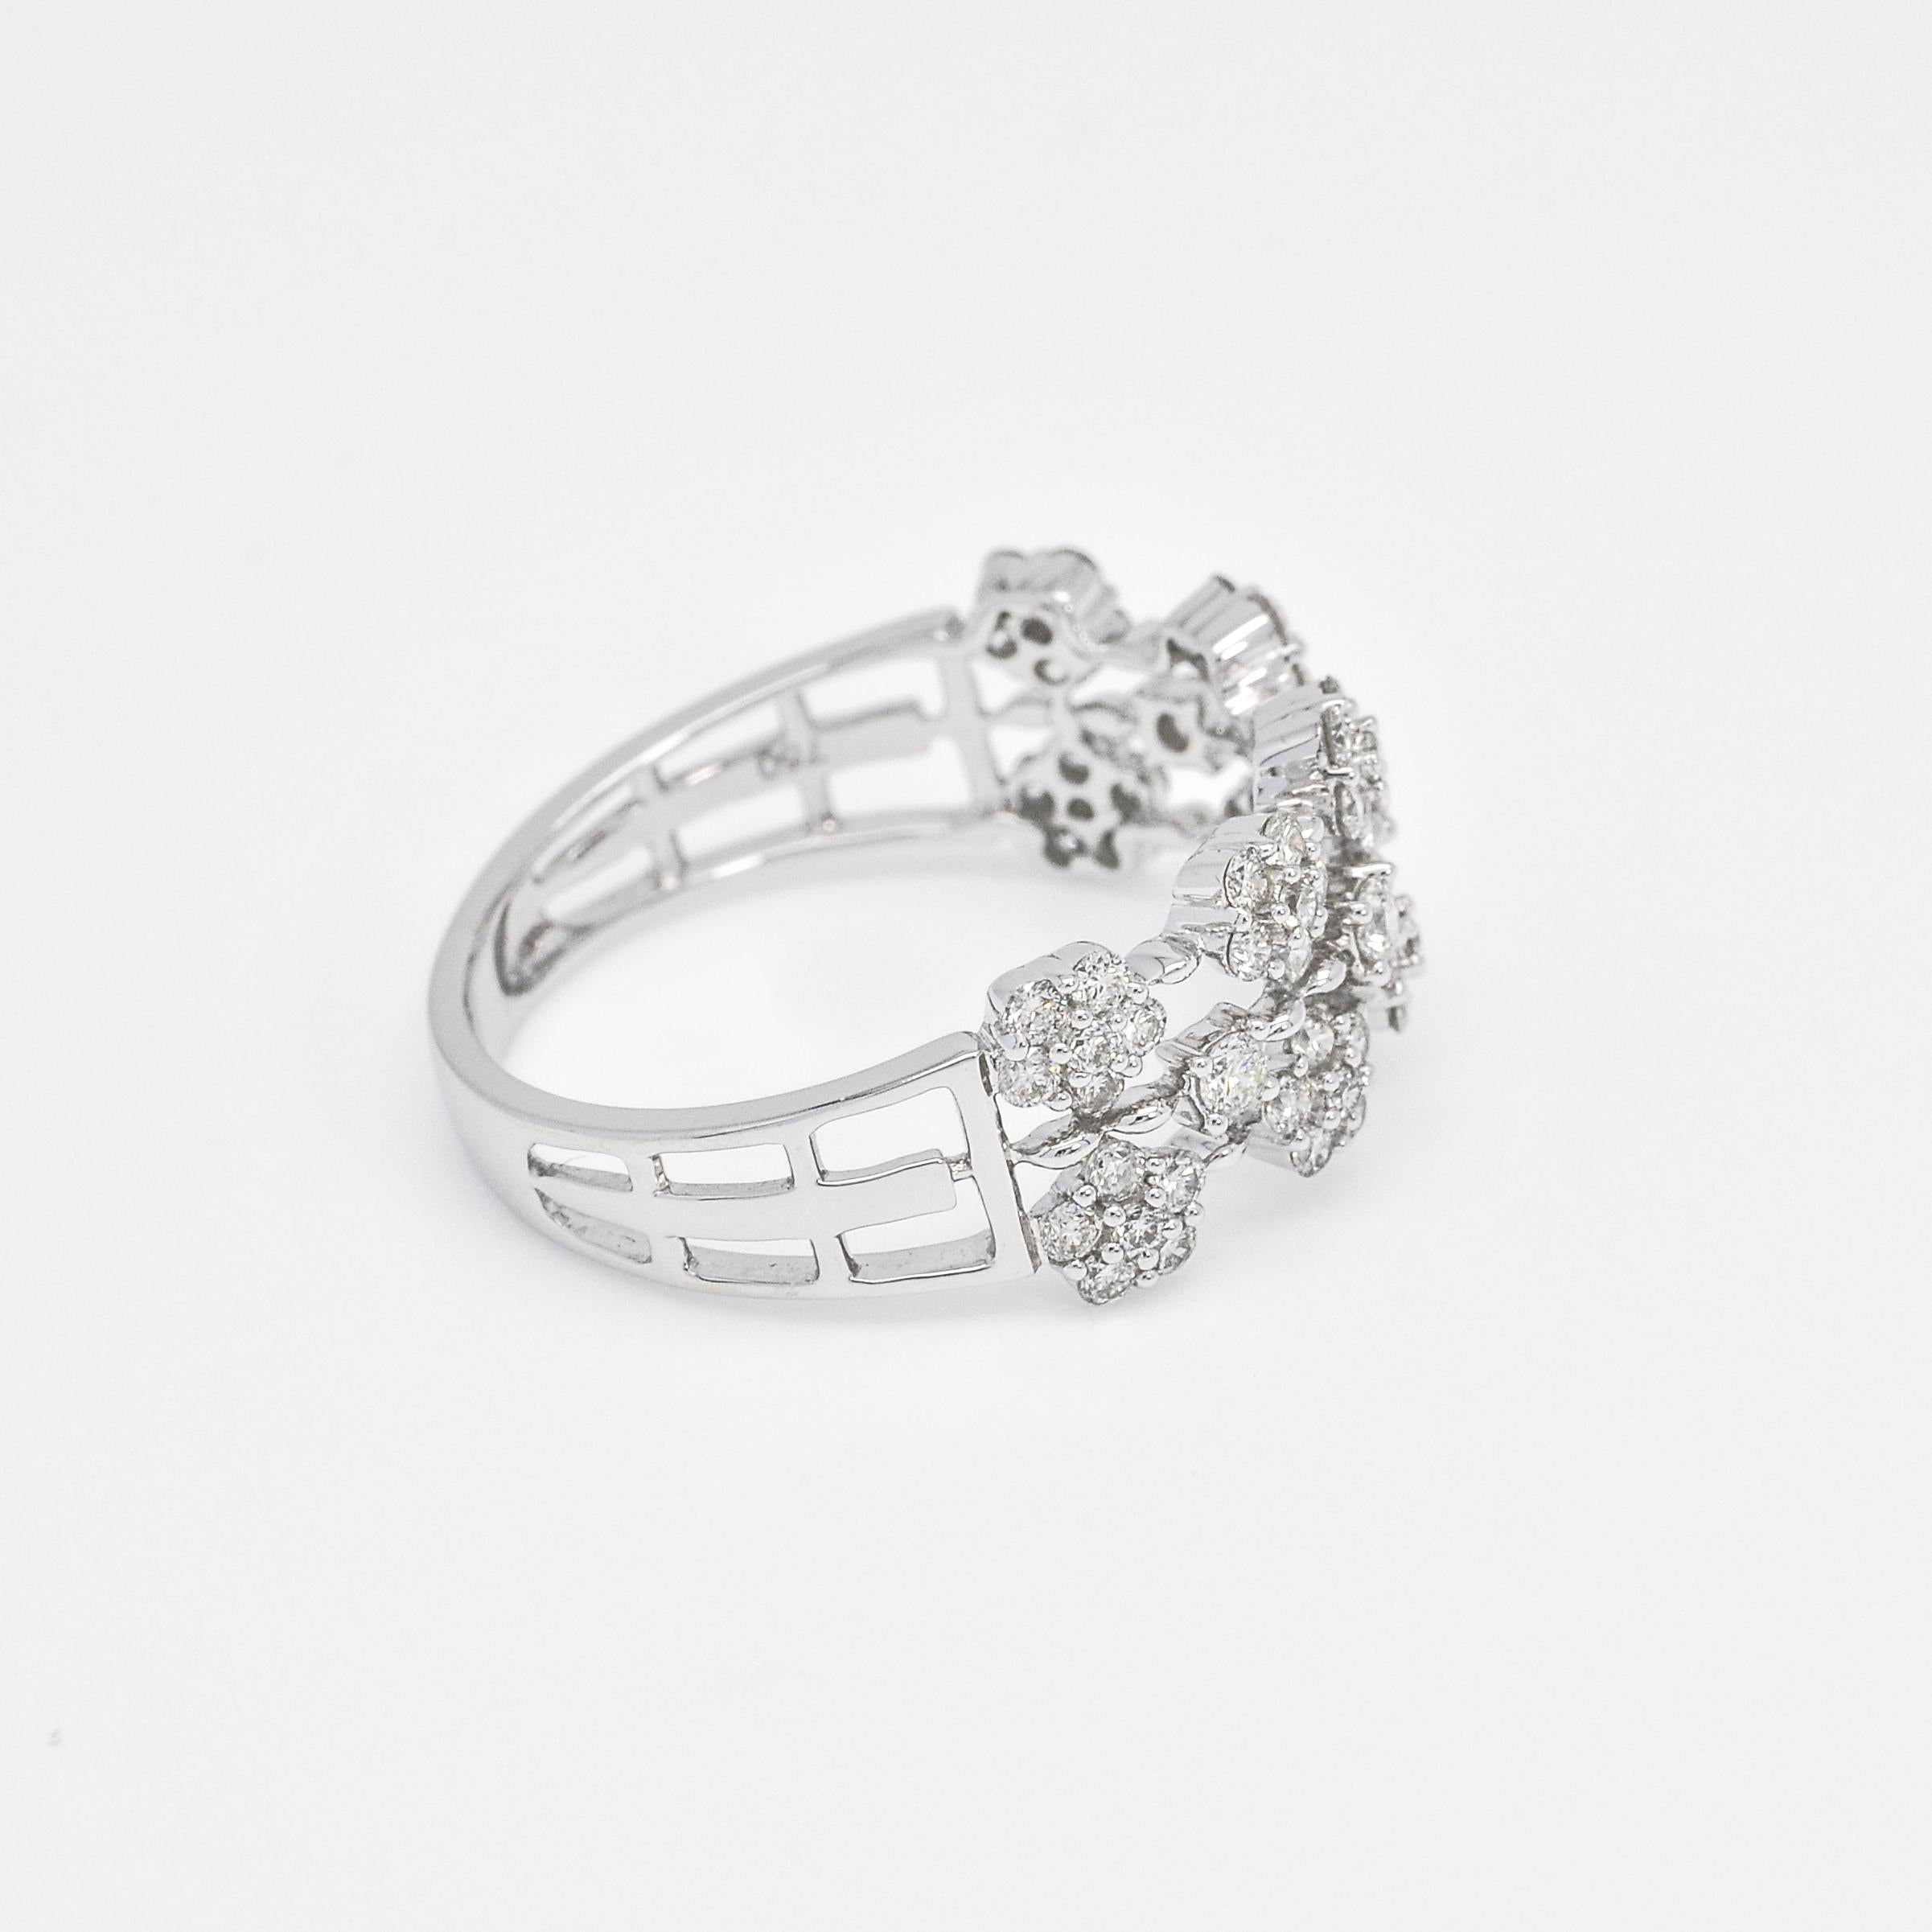 Der 18KT White Gold Diamond Multi Cluster Ring ist ein atemberaubendes Schmuckstück, perfekt für die besonderen Momente im Leben. Dieser Ring mit seinen wunderschönen Diamantenclustern präsentiert sich im Art-déco-Stil und verleiht ihm einen Hauch